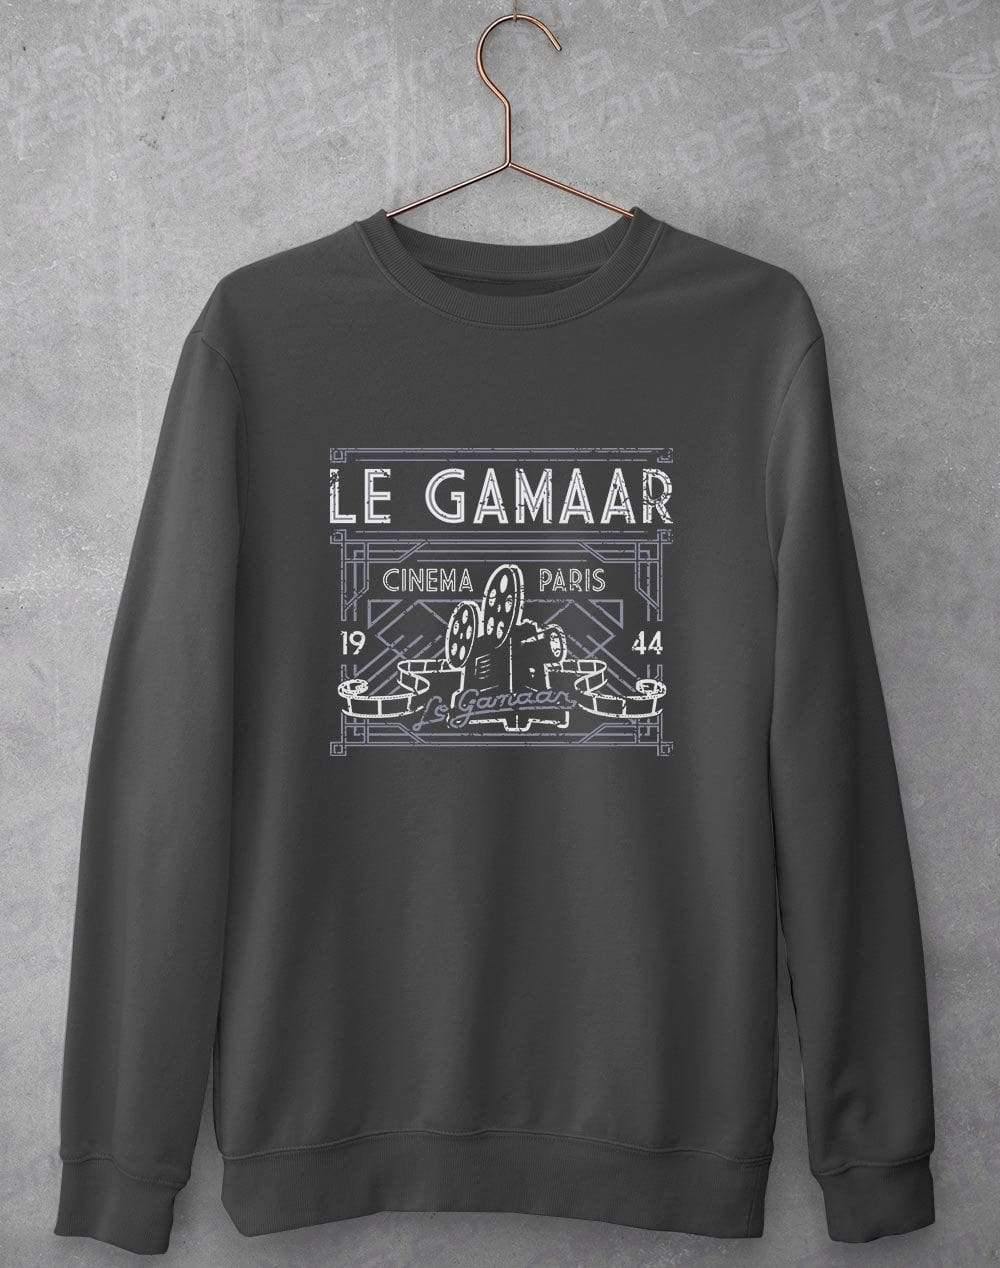 Le Gamaar Sweatshirt S / Charcoal  - Off World Tees